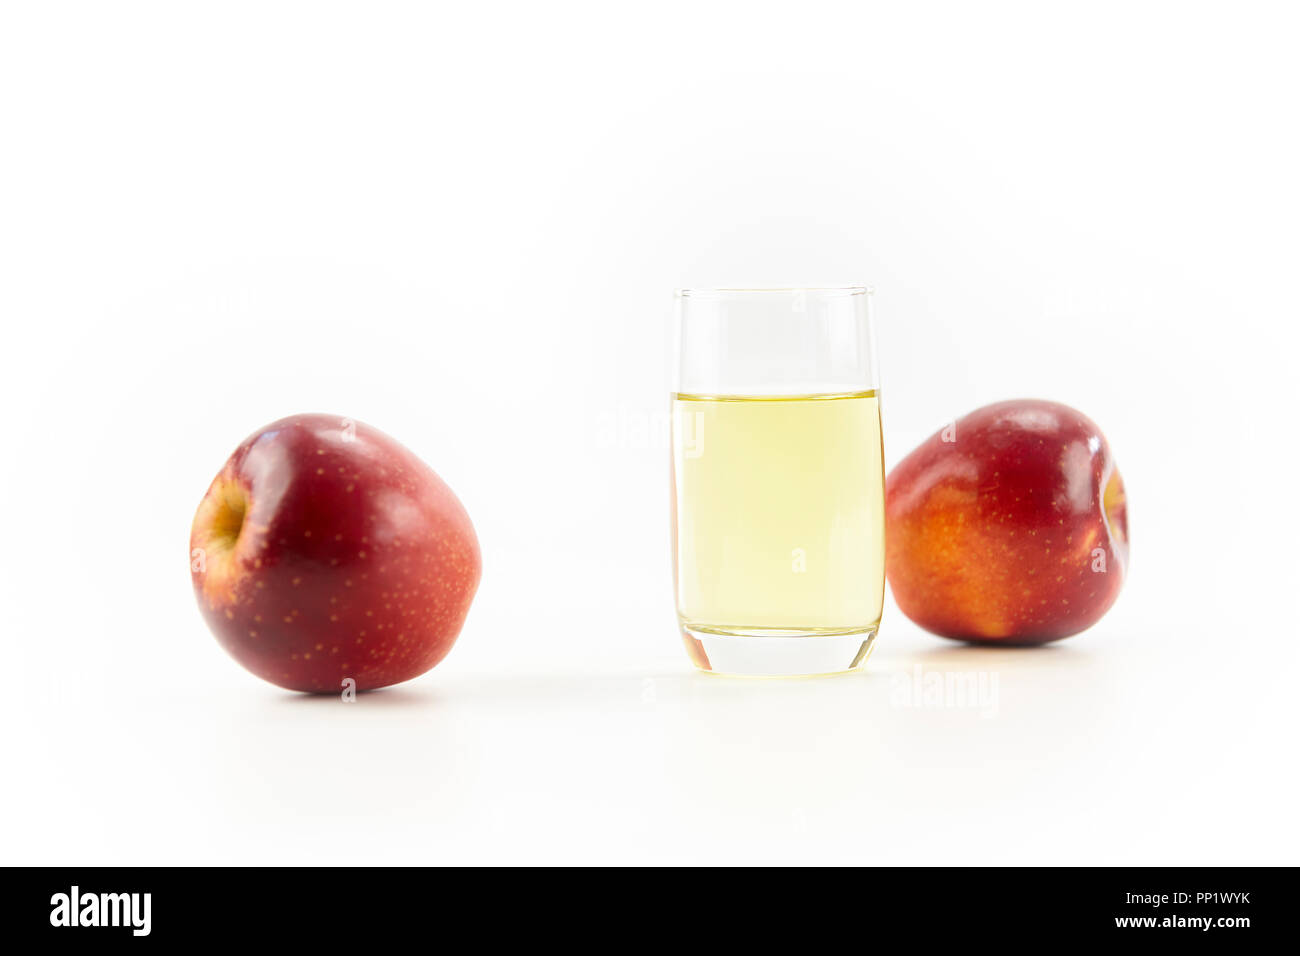 Zwei Äpfel und ein Glas Apfelsaft auf weißem Hintergrund. Stockfoto